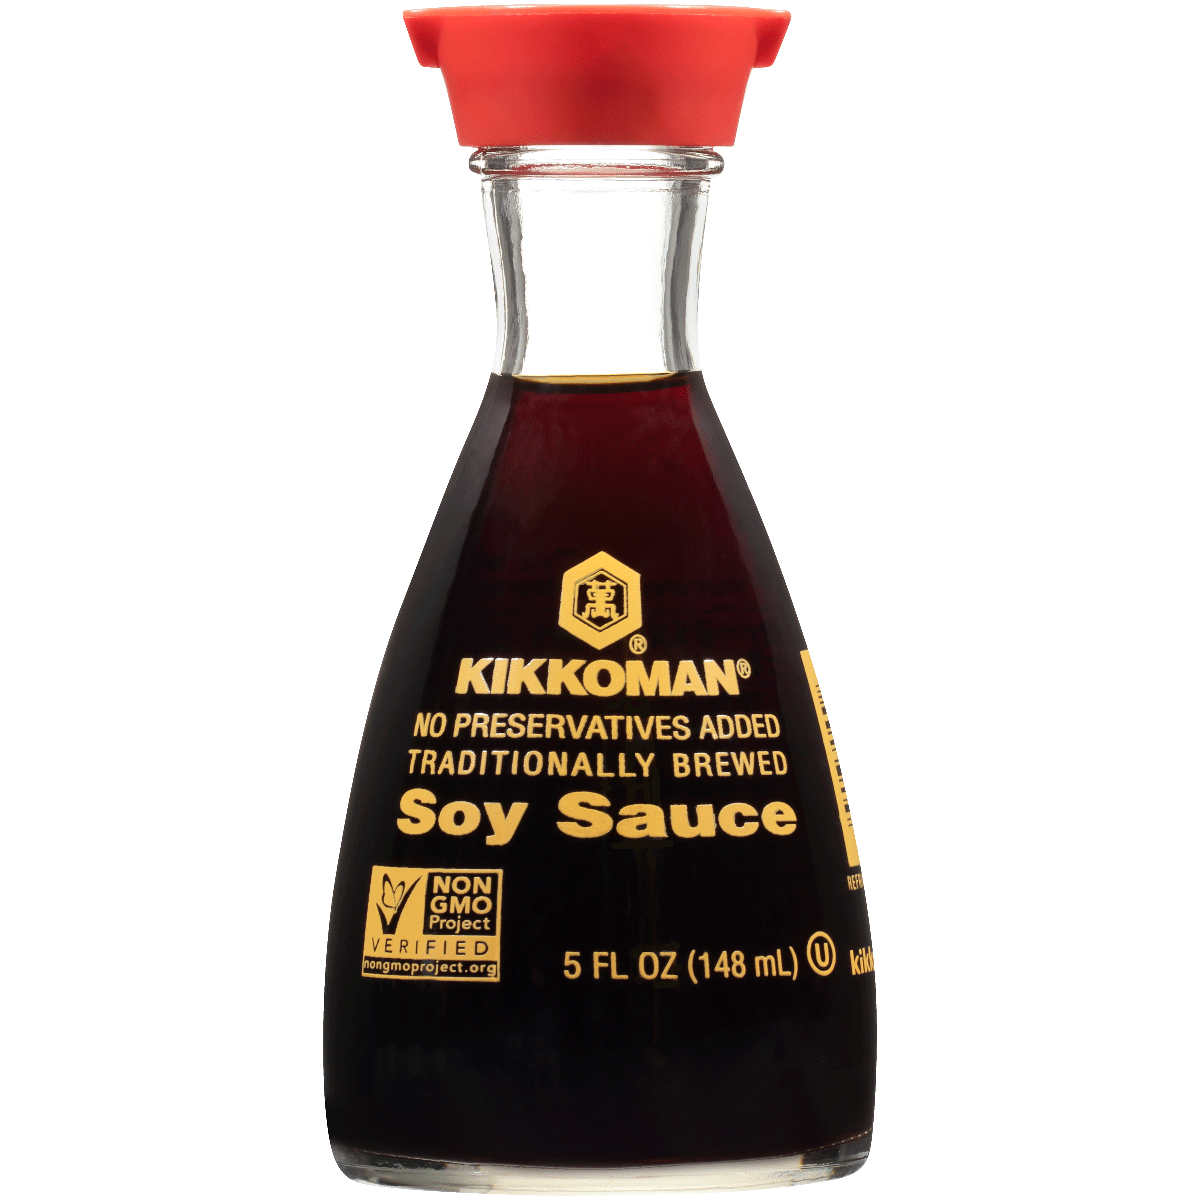 5 FL OZ Soy Sauce - Dispenser